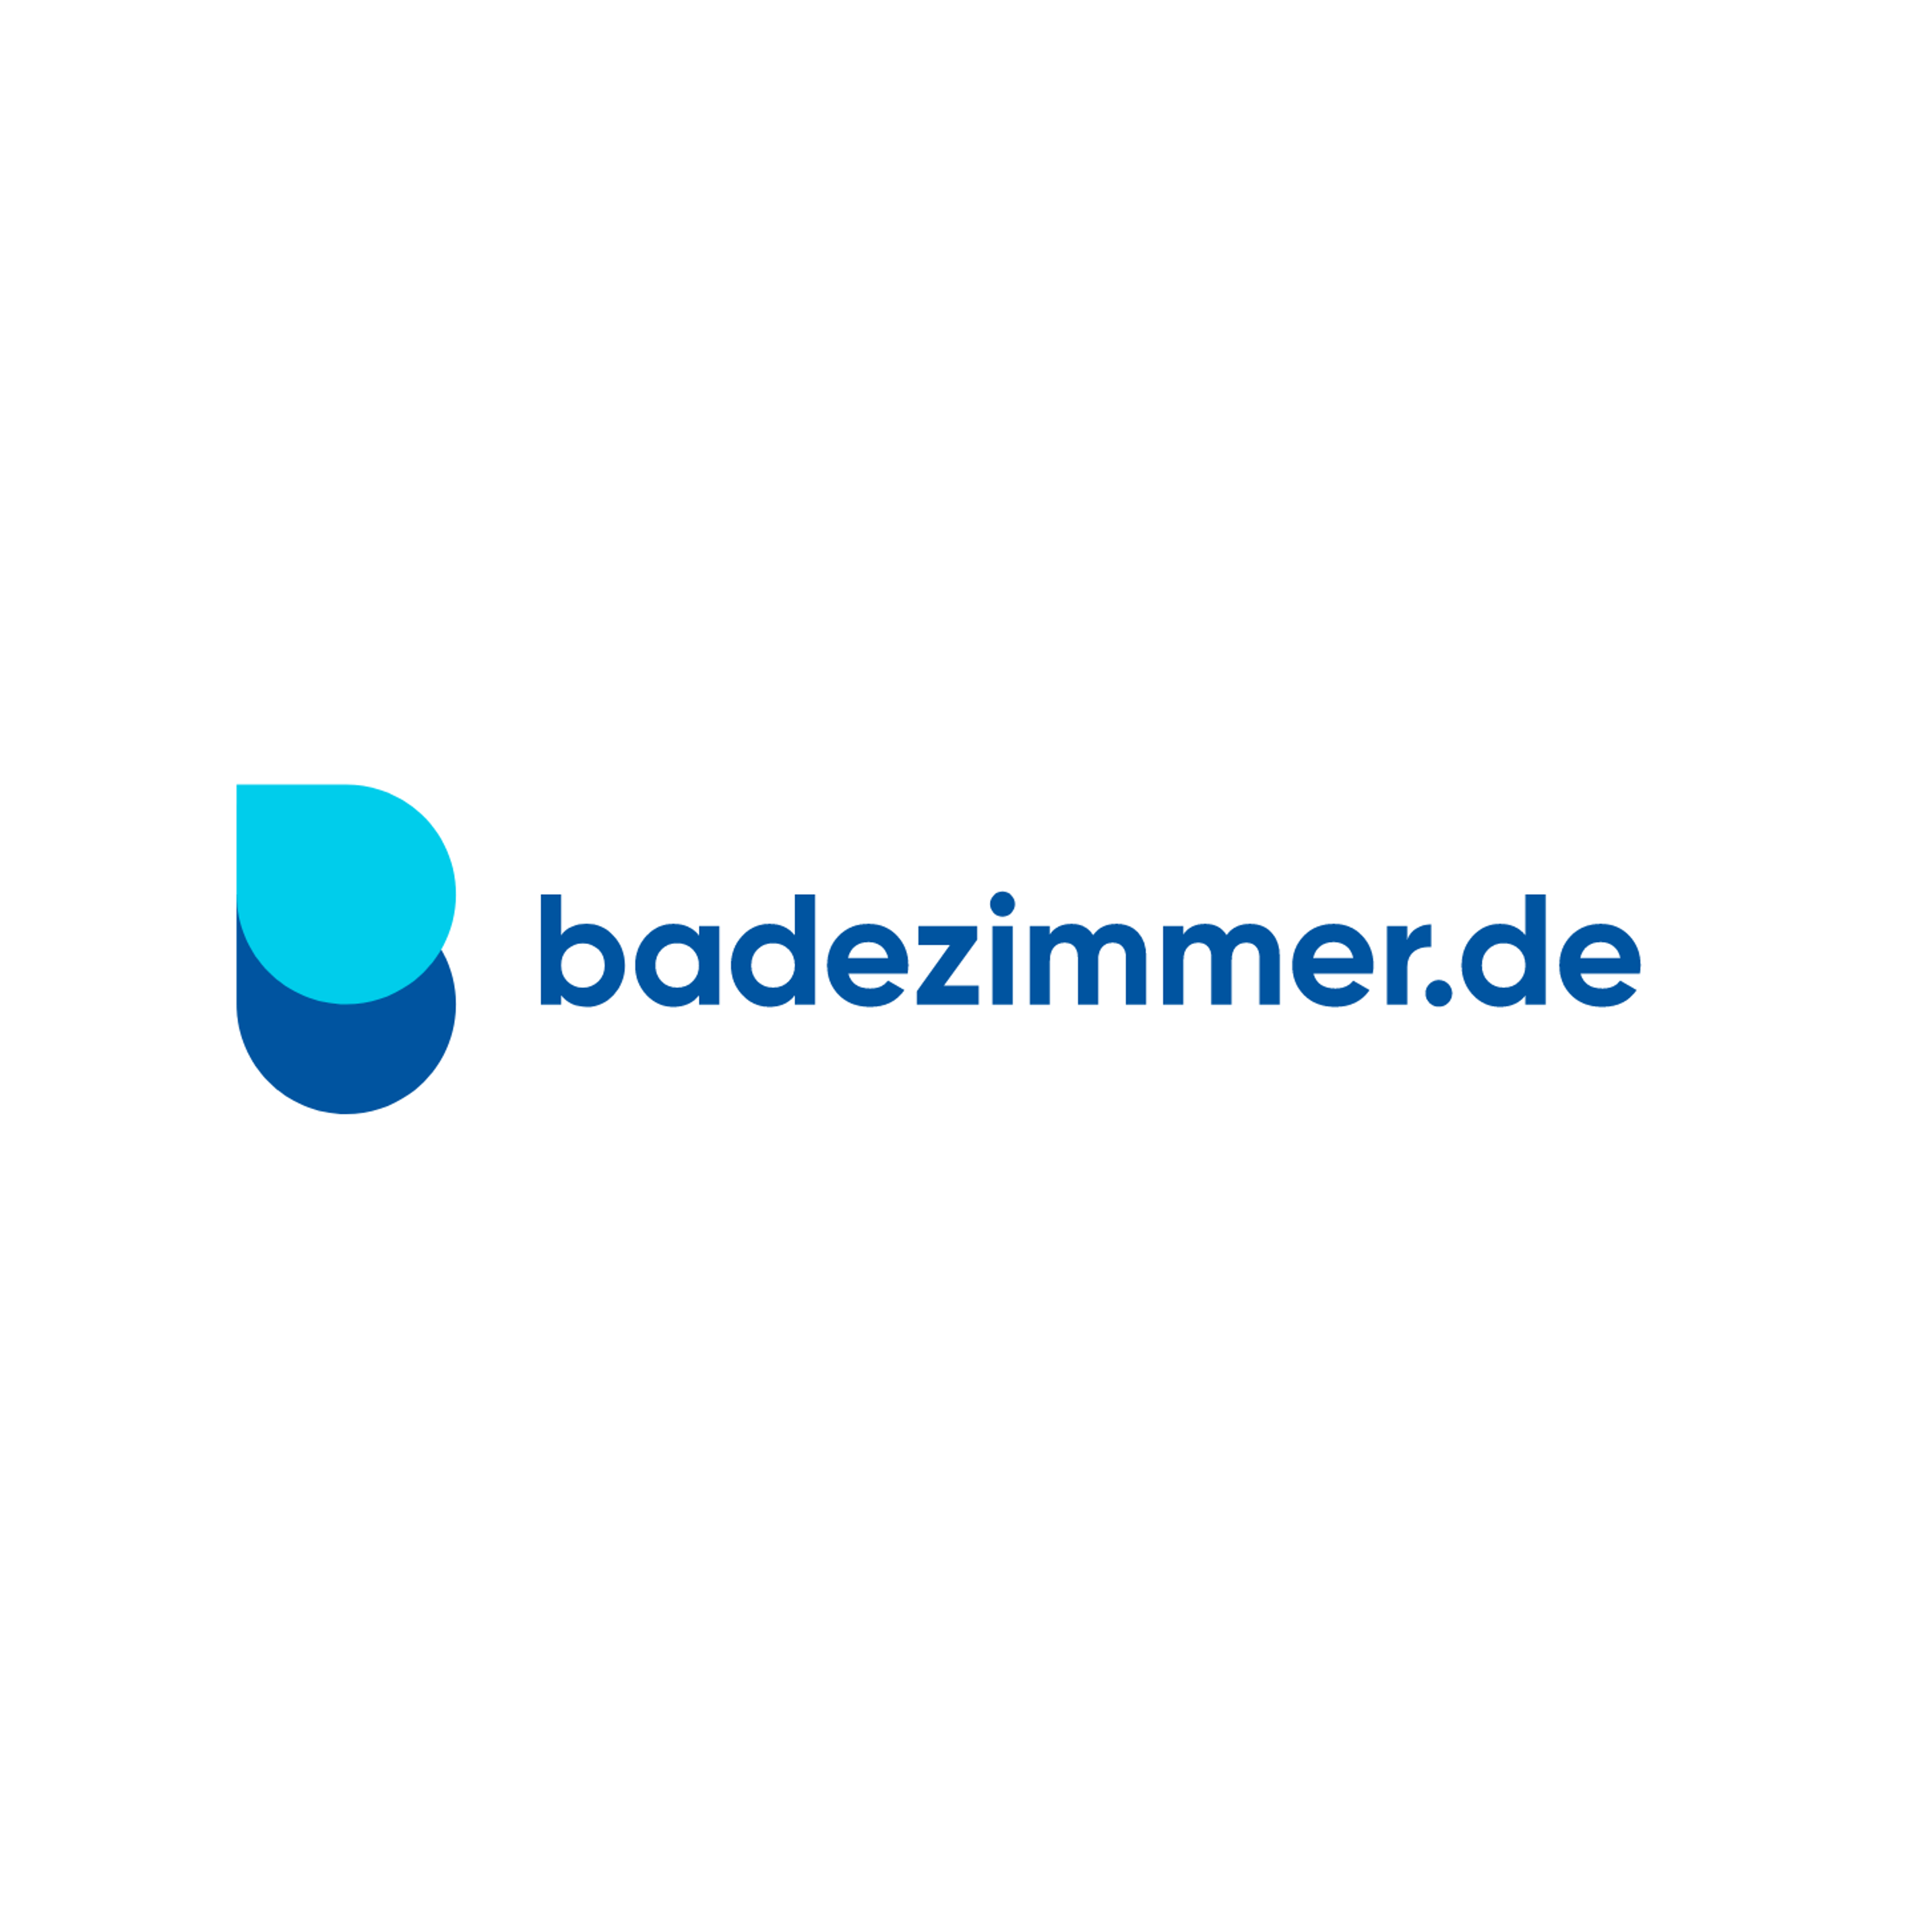 badezimmer.de Badausstellung Düsseldorf - Zimmer & Kellermann in Düsseldorf - Logo